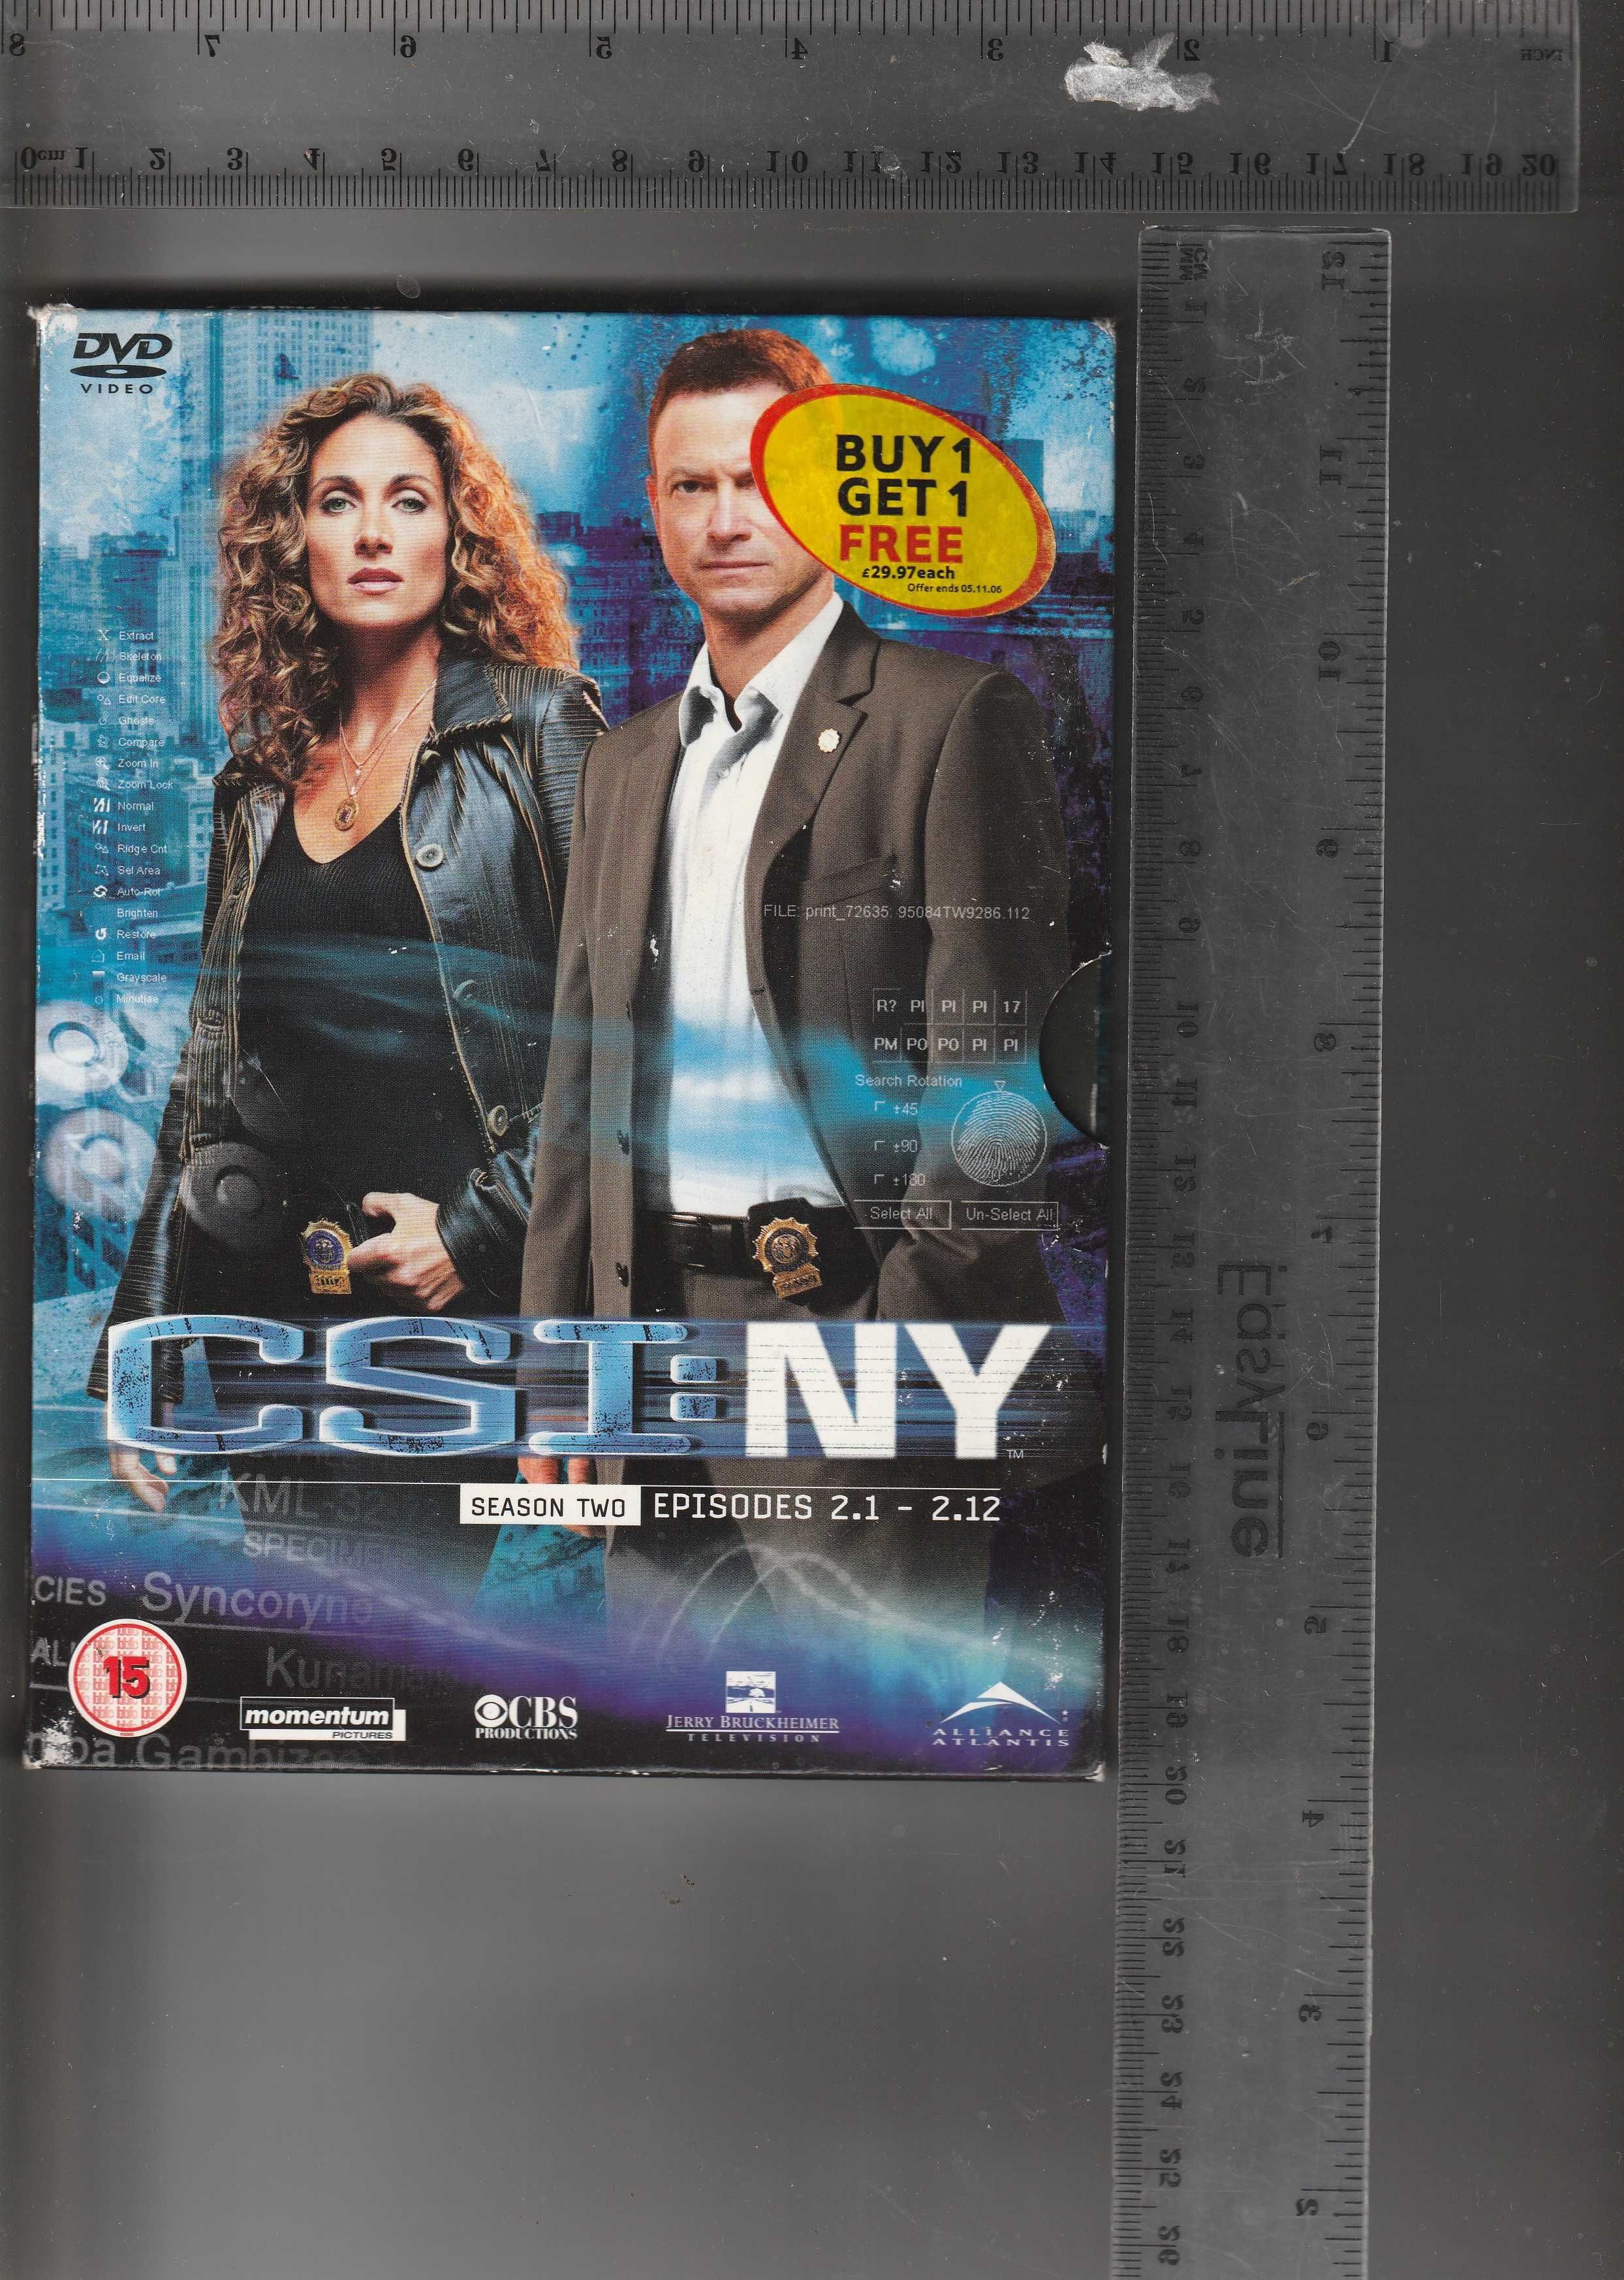 CSI: NY Season 2 episodes 1-12 DVD